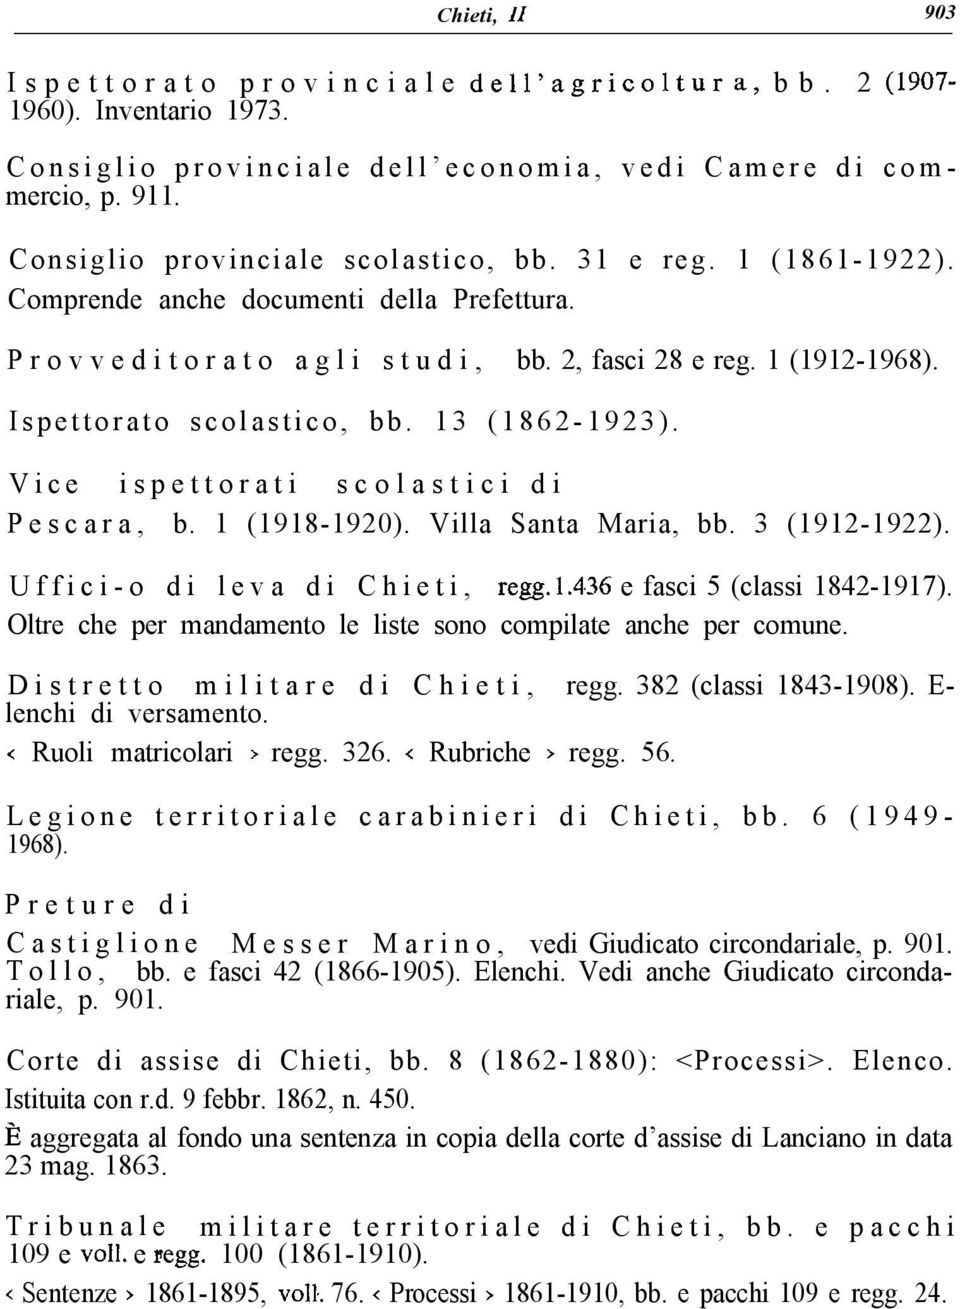 13 (1862-1923). Vice ispettorati scolastici di Pescara, b. 1 (1918-1920). Villa Santa Maria, bb. 3 (1912-1922). Uffici-o di leva di Chieti, regg. 1.4,36 e fasci 5 (classi 1842-1917).